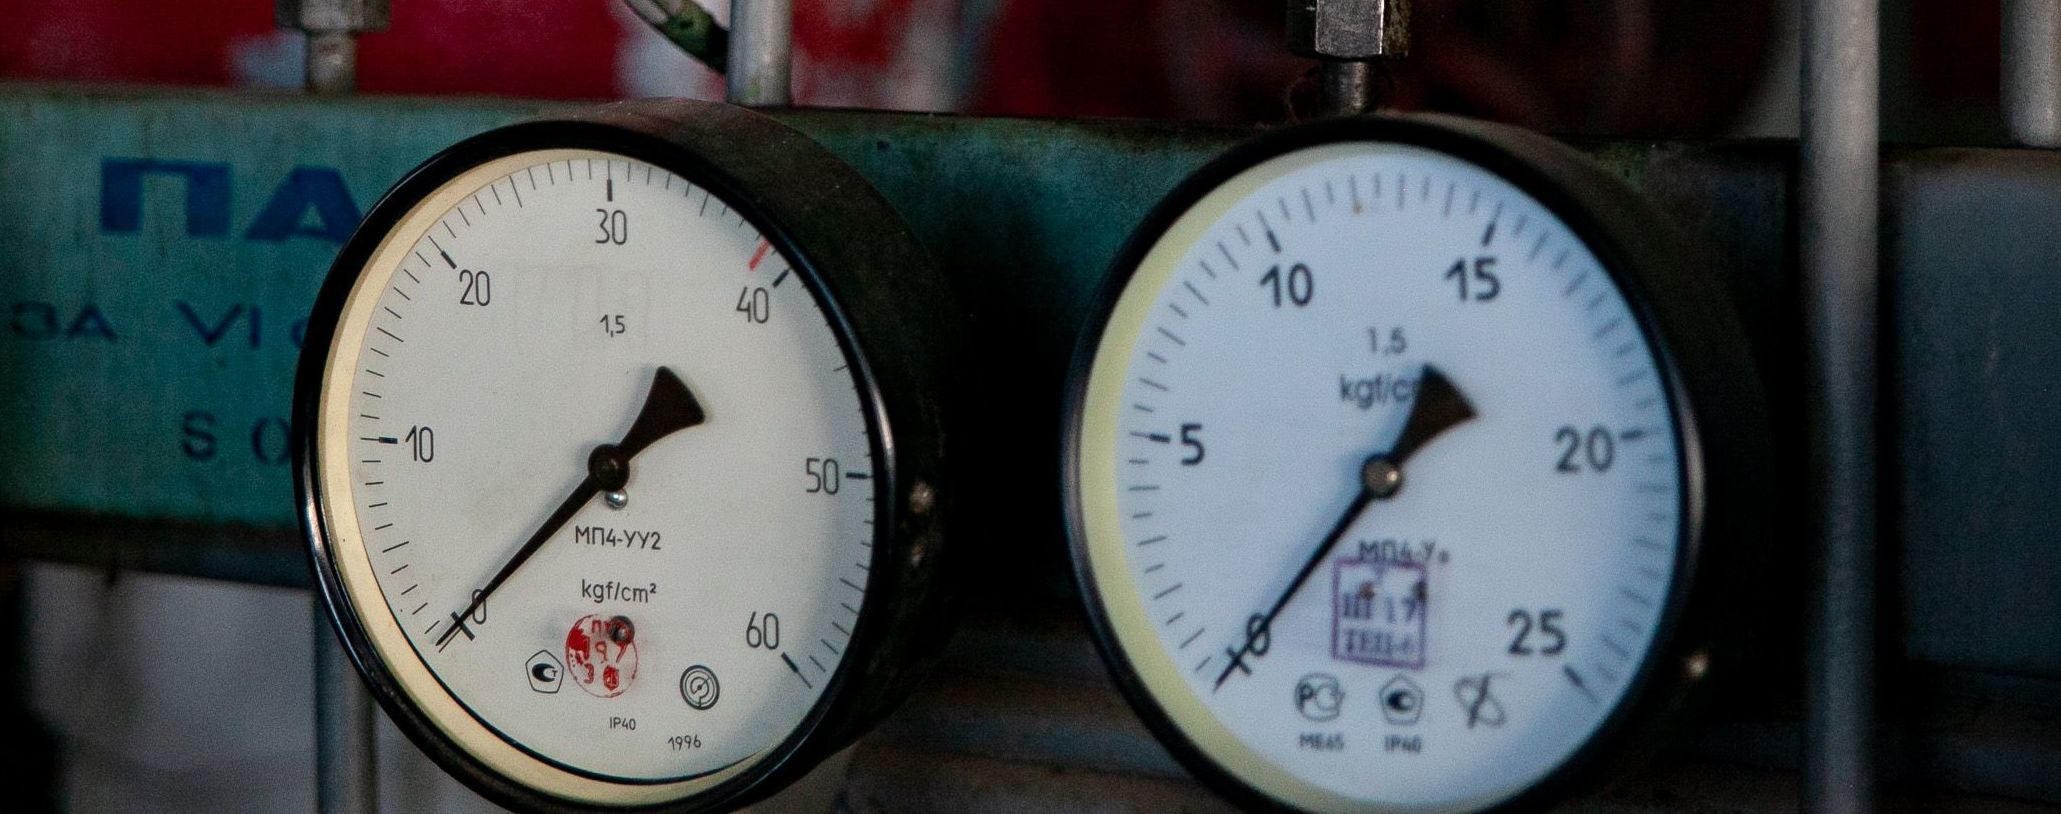 "Нафтогаз" предложил подключать отопление в Киеве выборочно